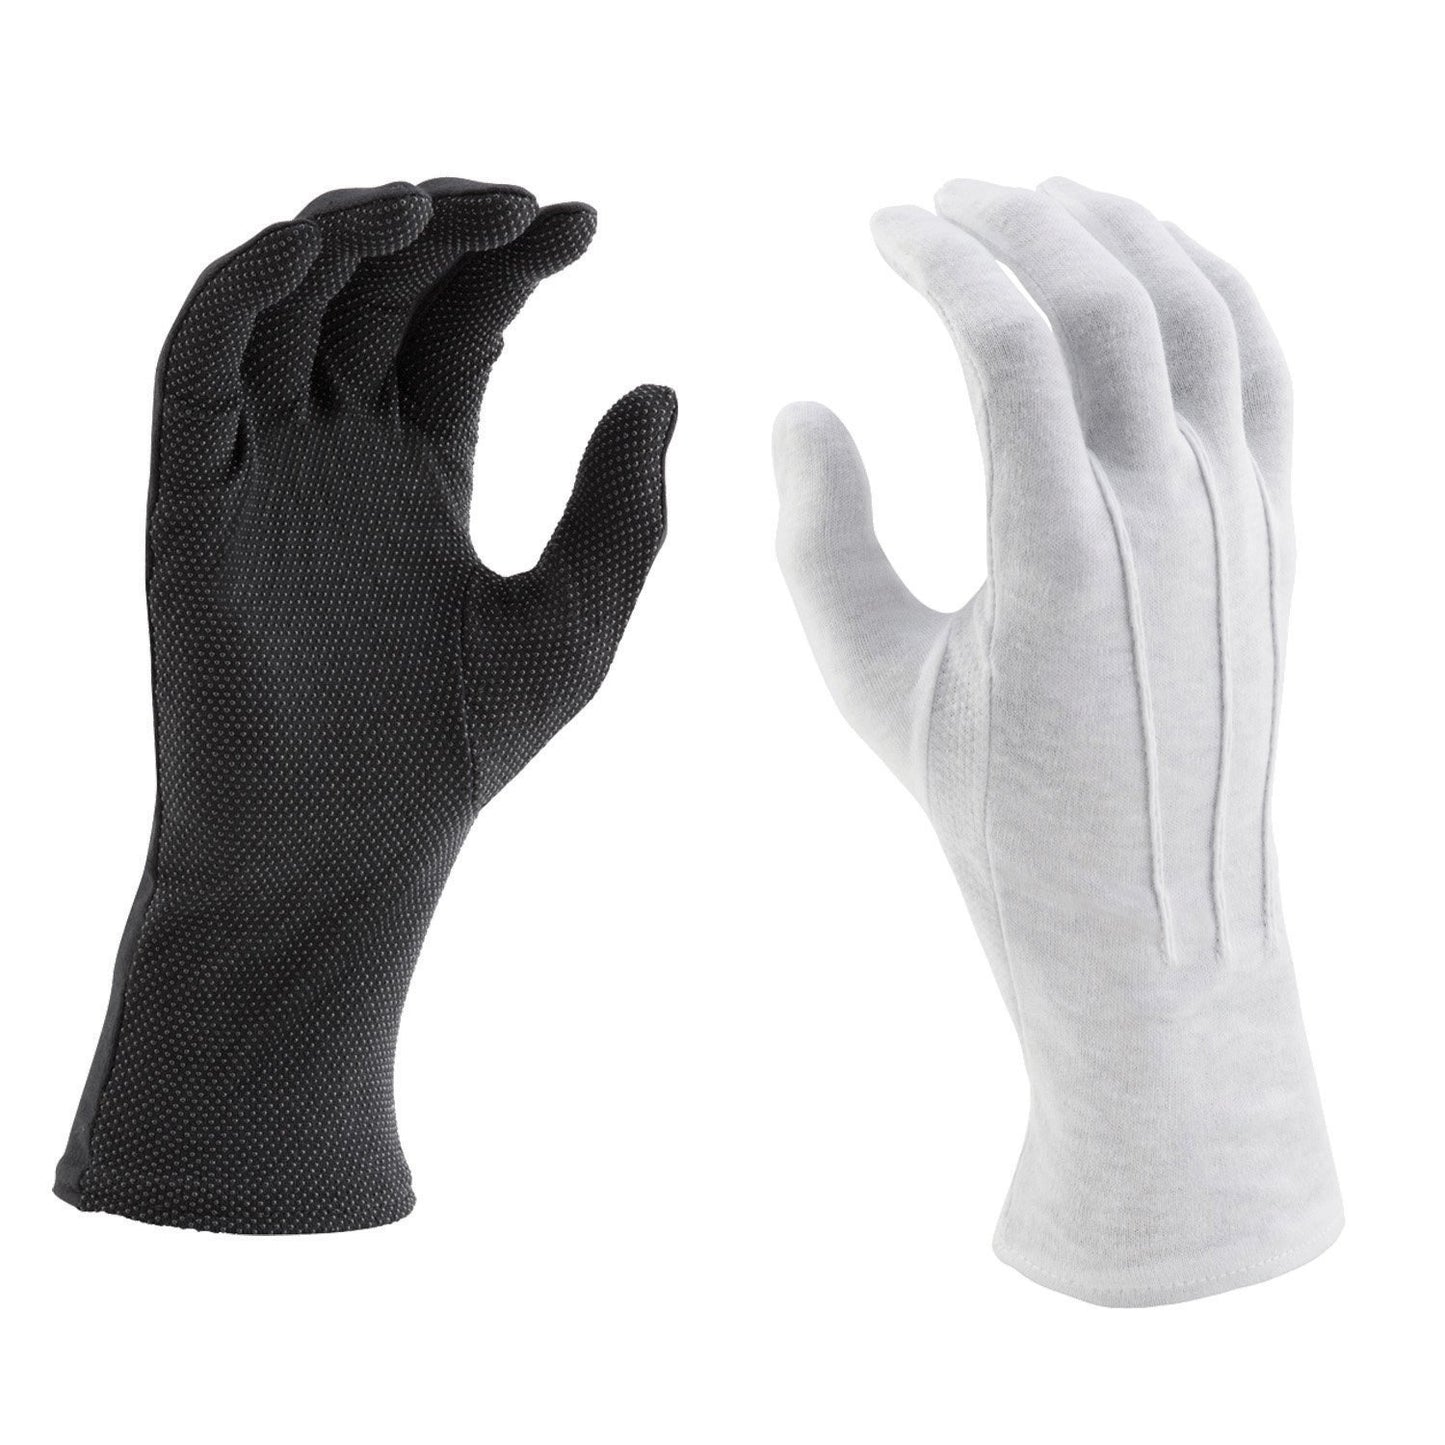 Vivace Long Wrist Cotton PVC Grip Gloves